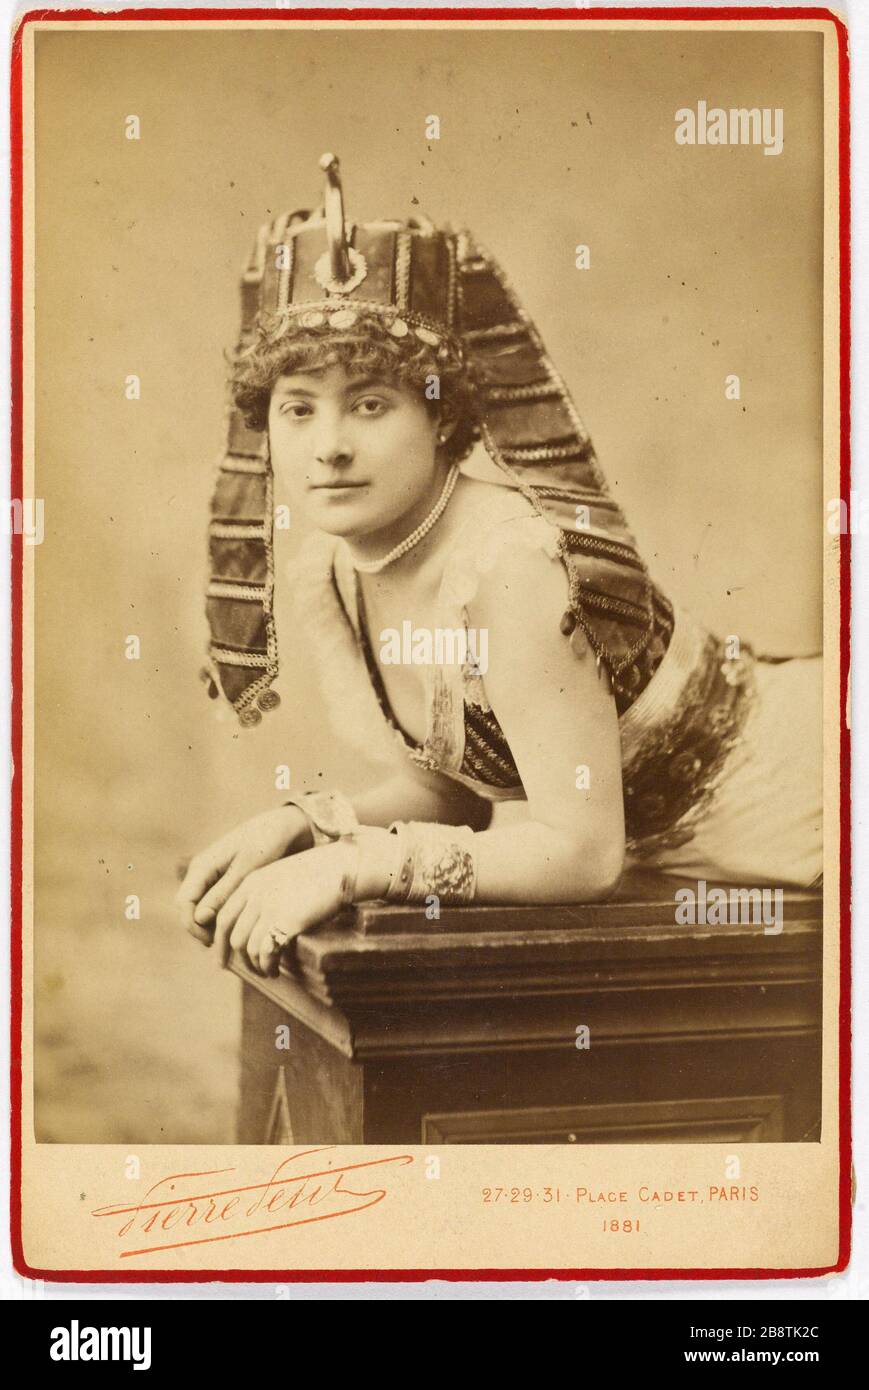 Portrait of Louise Bonnet, actress 'Portrait de Louise Bonnet, actrice'. Photographie de Pierre Petit (1831-1909). Tirage sur papier albuminé. Paris, musée Carnavalet. Stock Photo